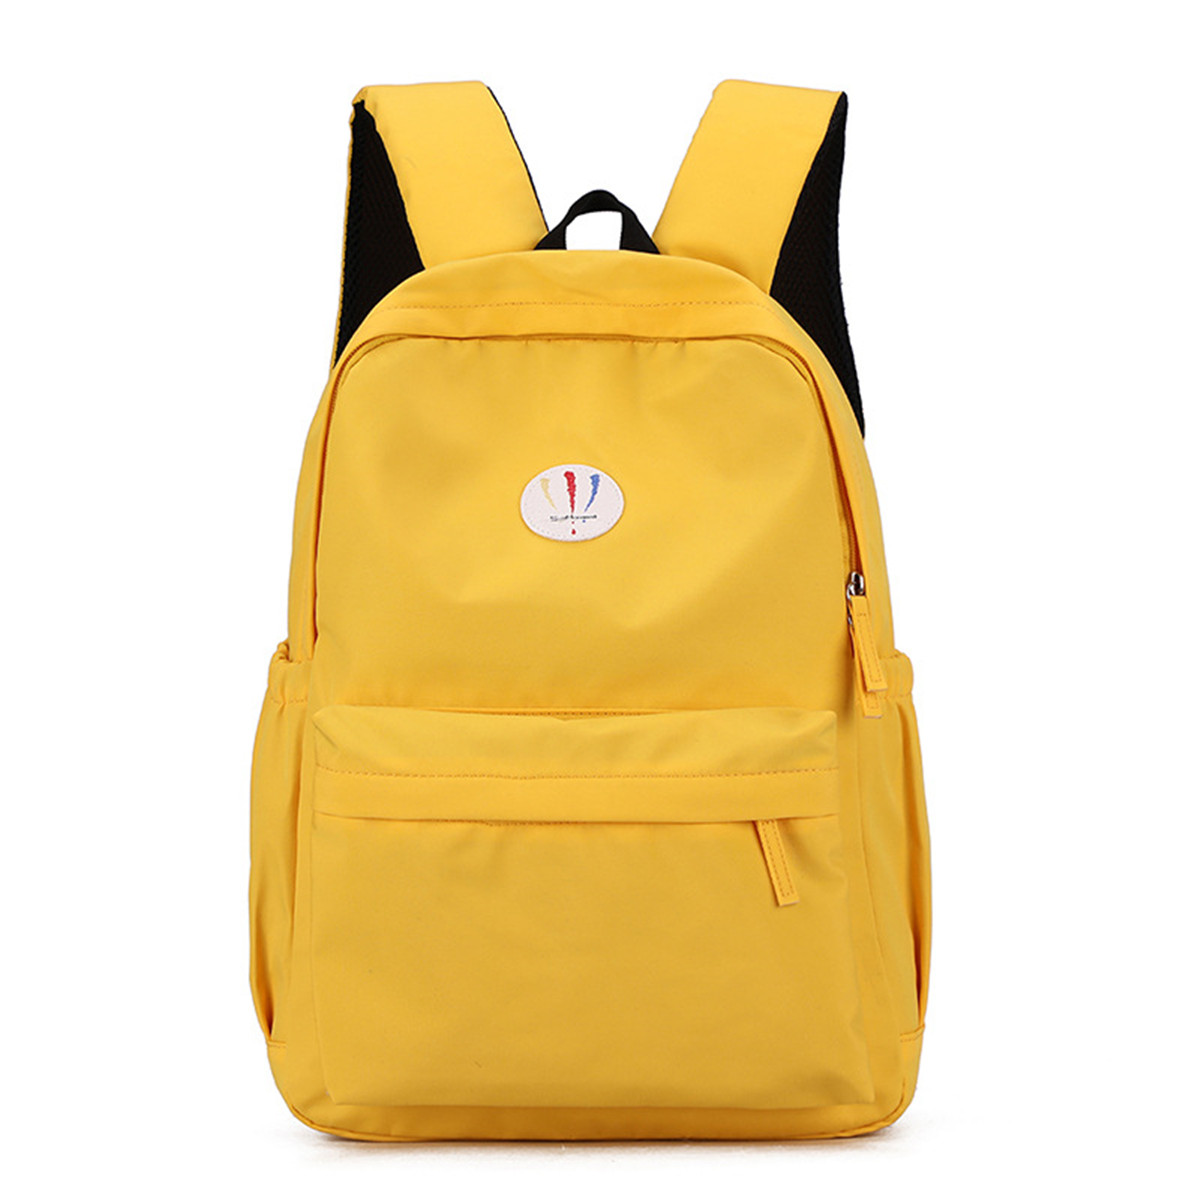 Honey Backwoods Backpack Students Bookbag Schoolbag Casual Daypack For Boys Girls Teens Women Men